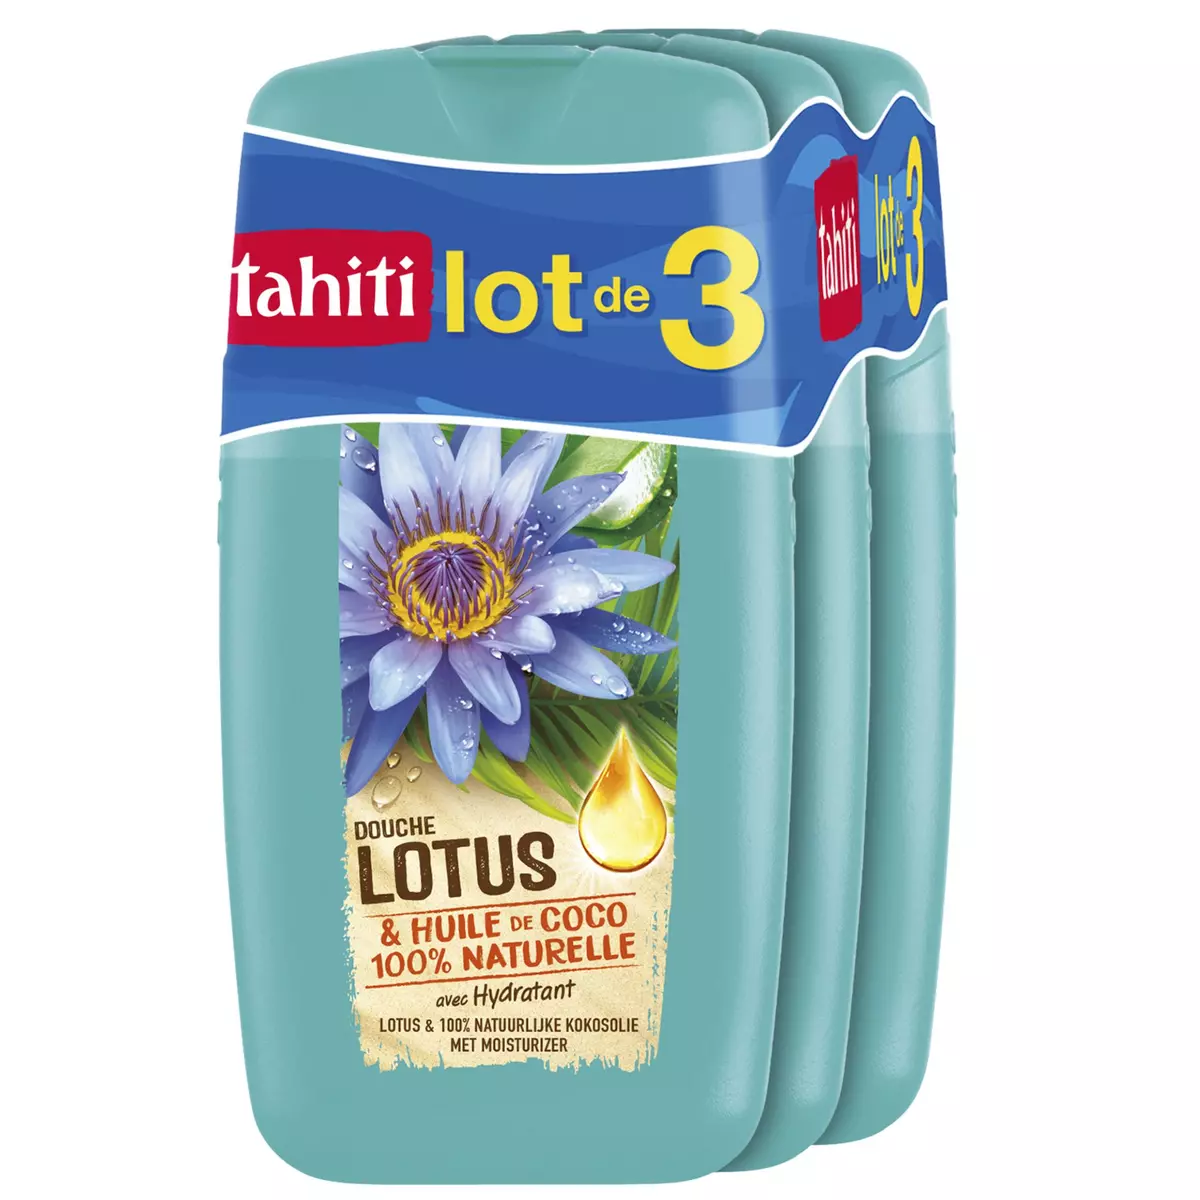 TAHITI Douche lotus huile coco 3x250ml